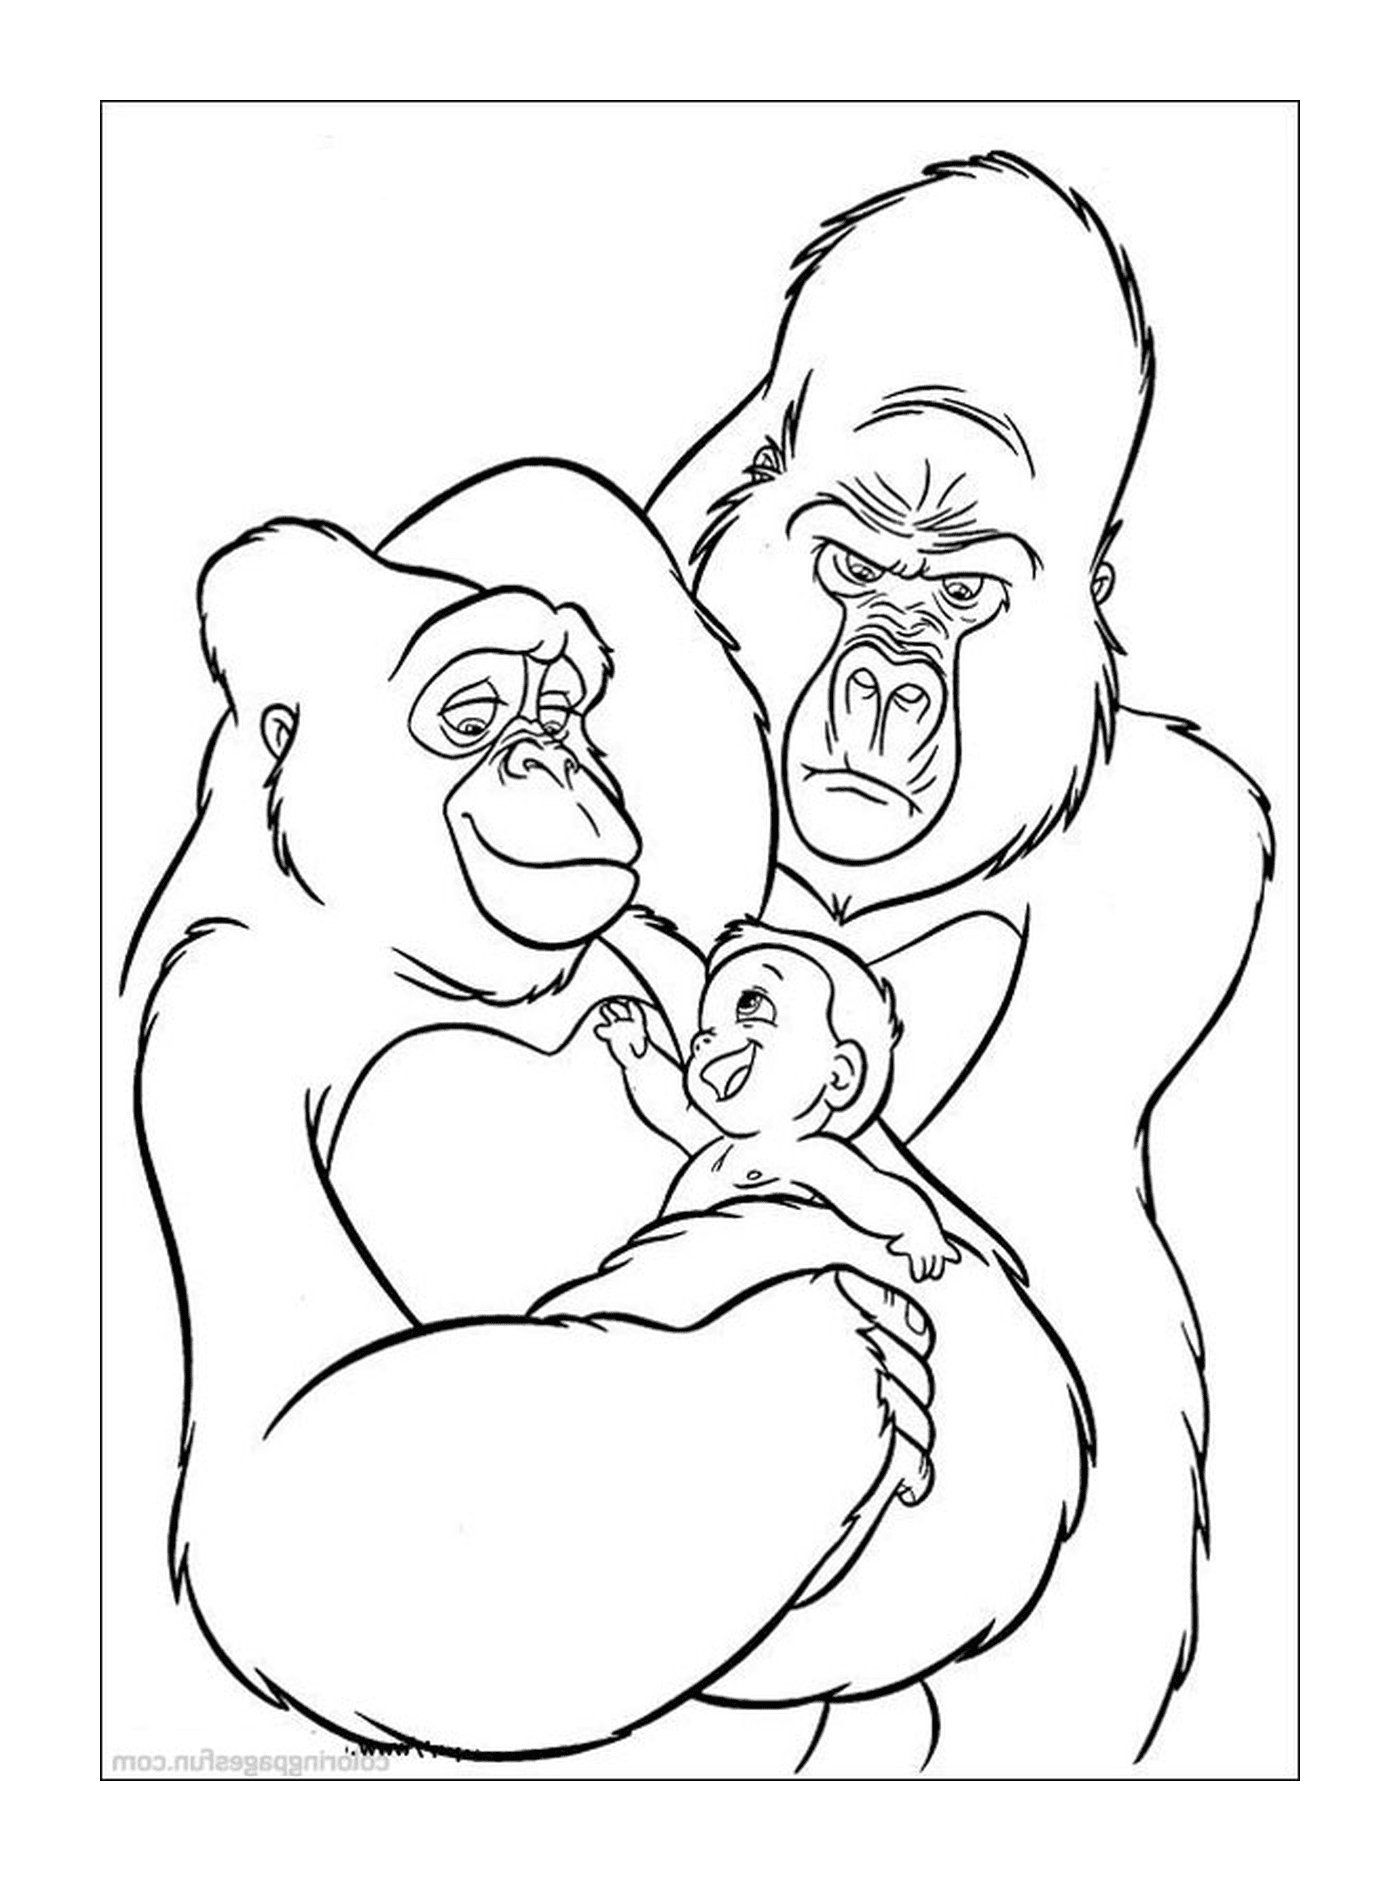  Gorilla e gorilla 